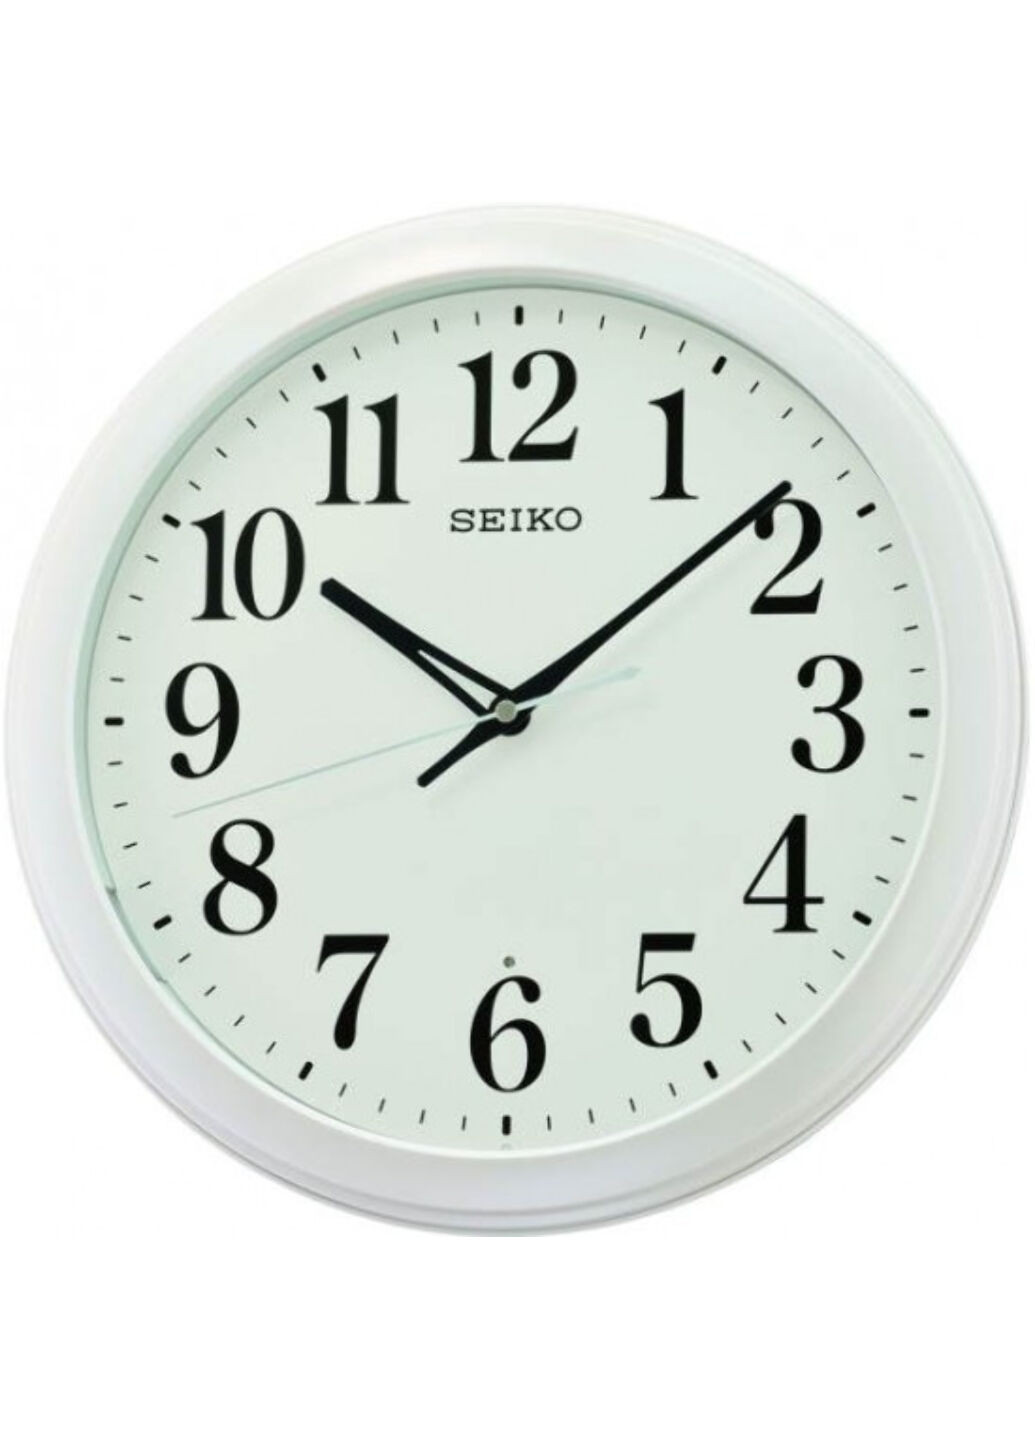 Часы настенные Seiko qxa776w (250601261)